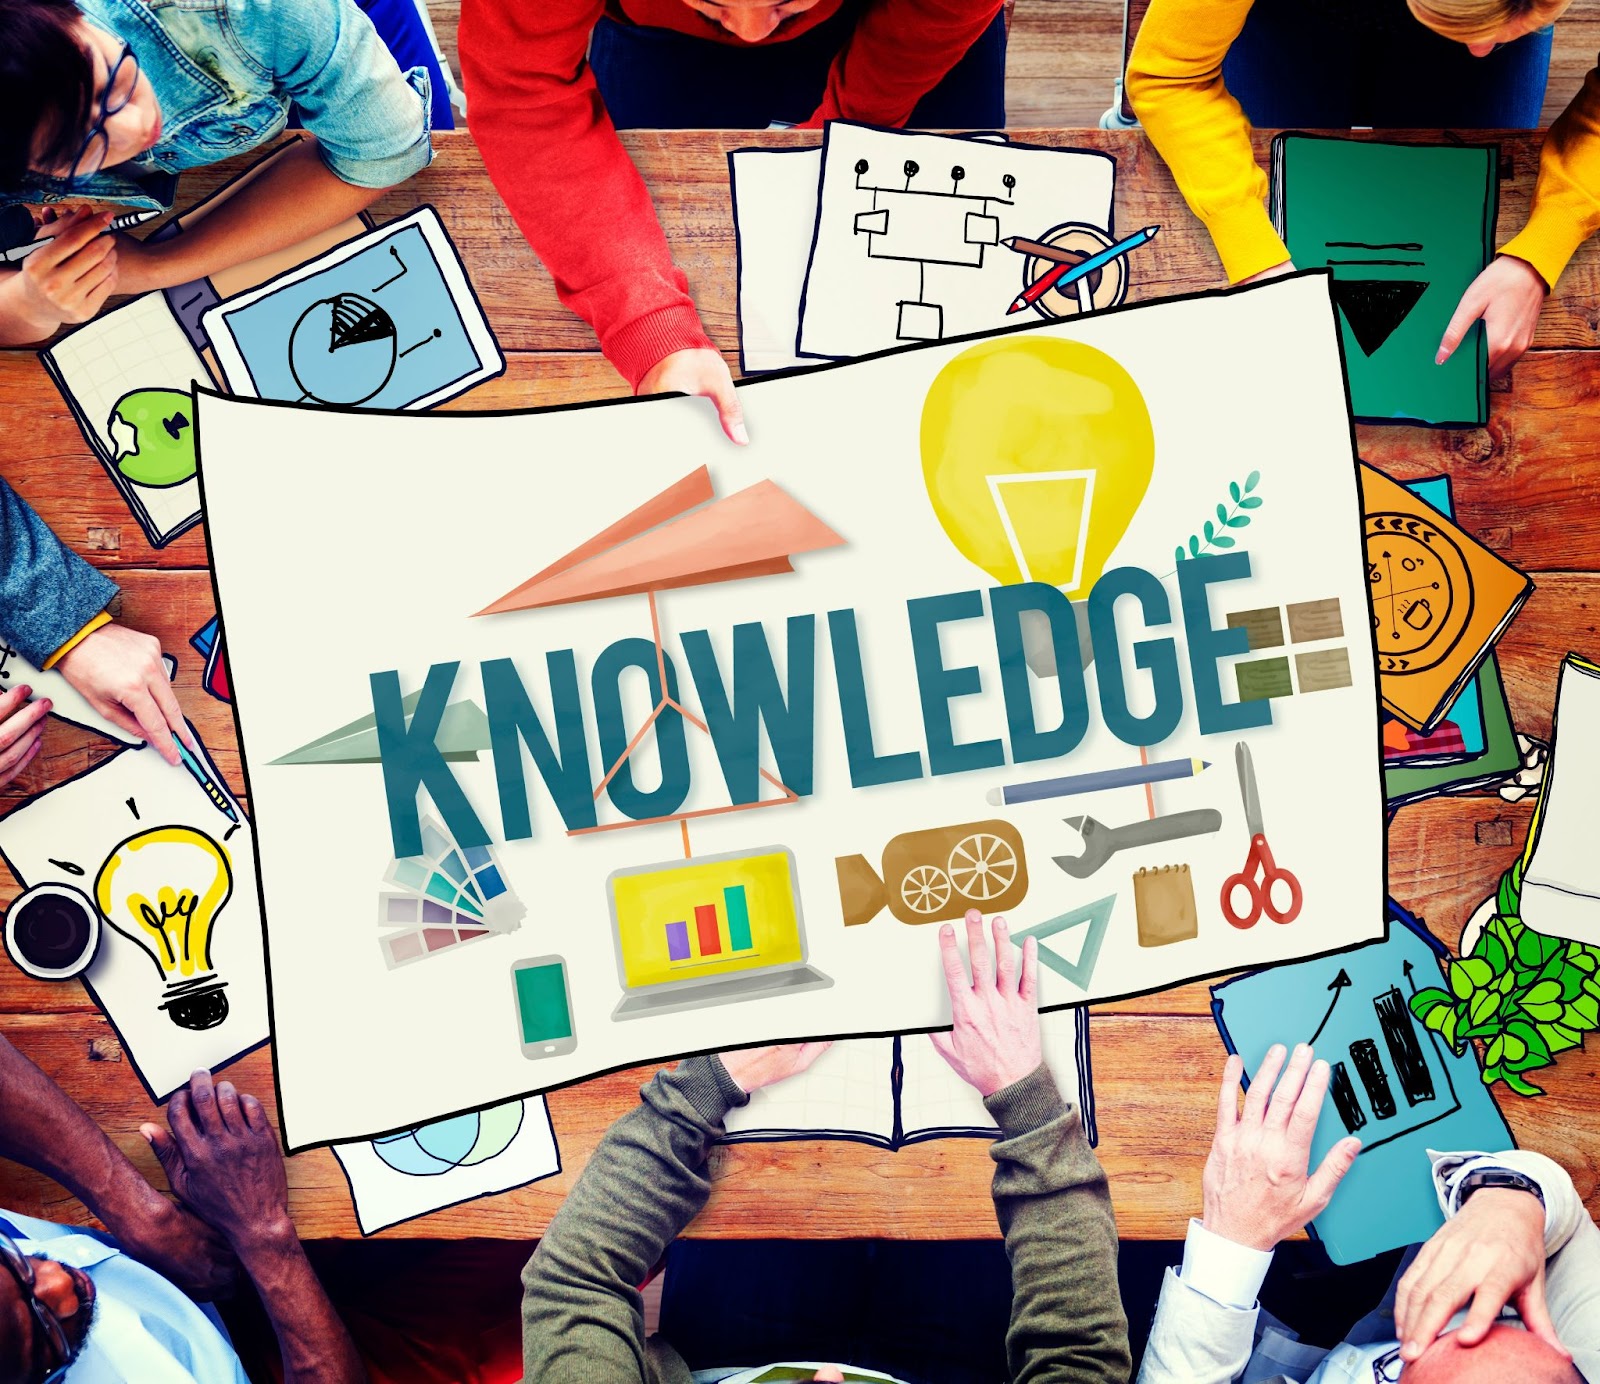 Imagem que tem como centro a discussão sobre conhecimento (representado pela palavra “knowledge” no centro)